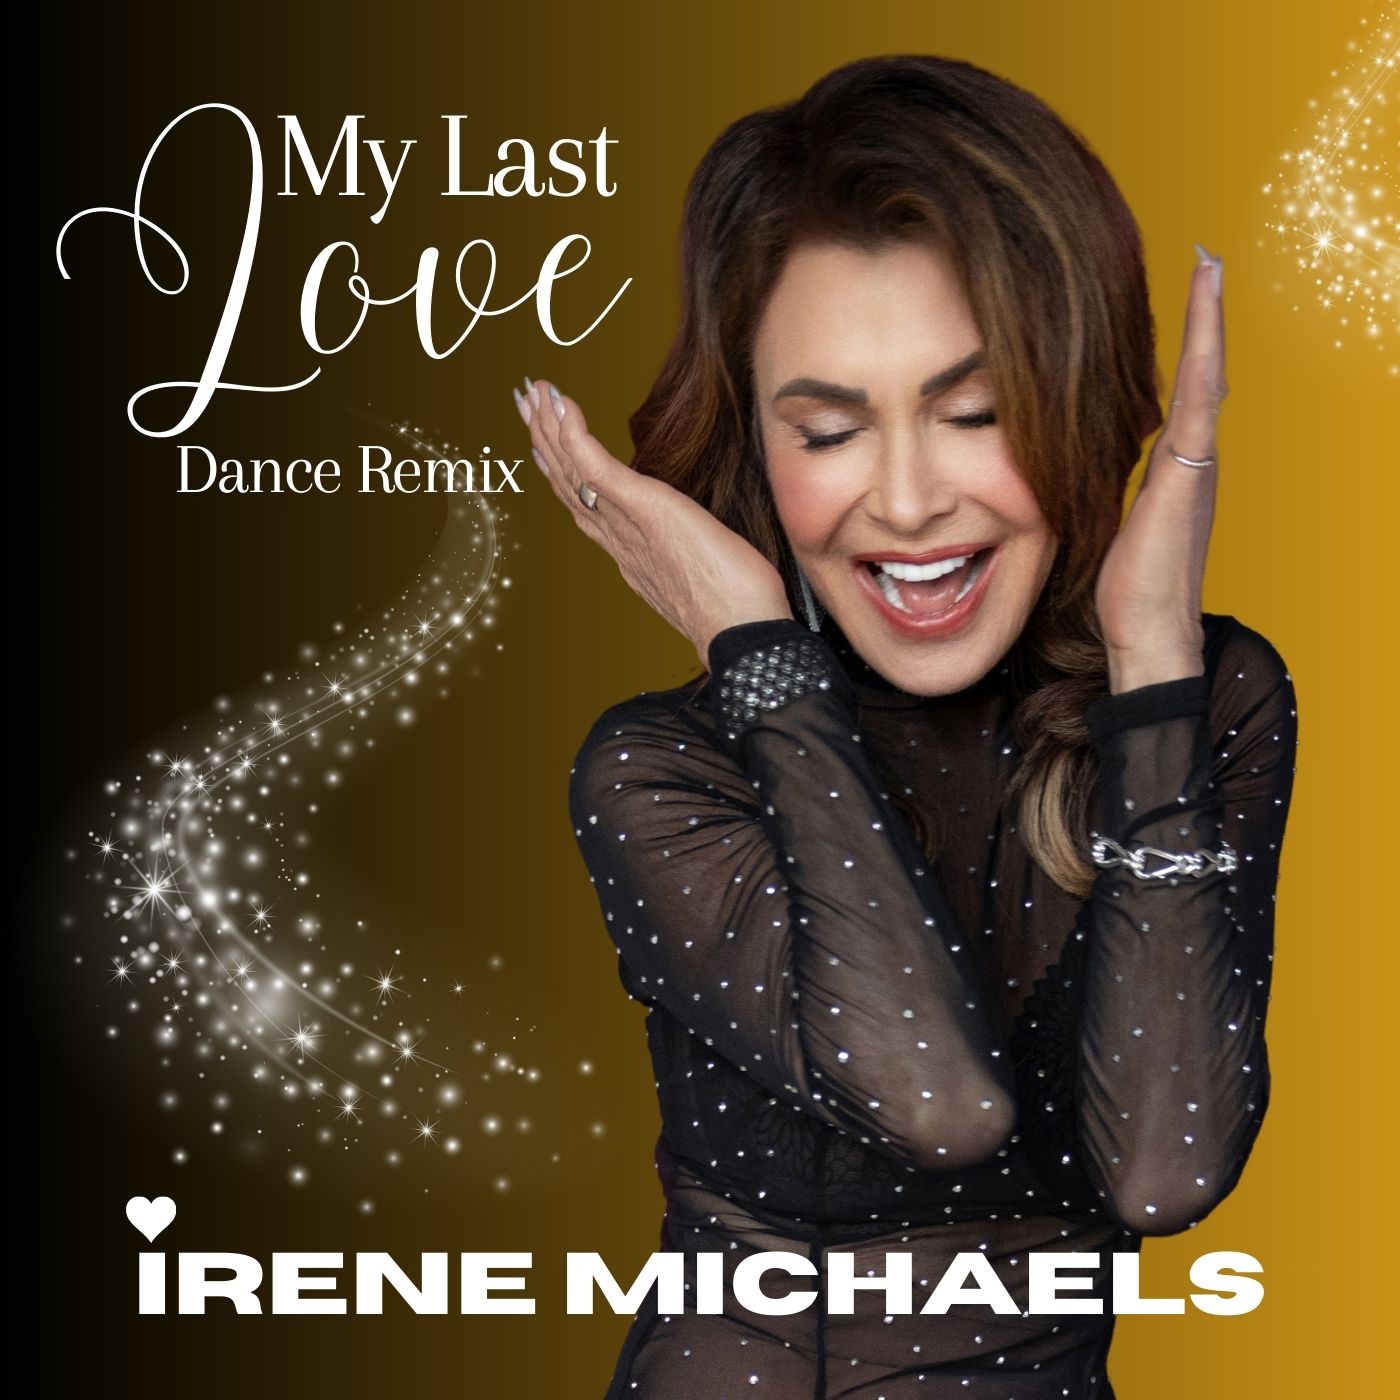 Josie Award Winner Irene Michaels Releases New EP “My Last Love” Dance Remixes